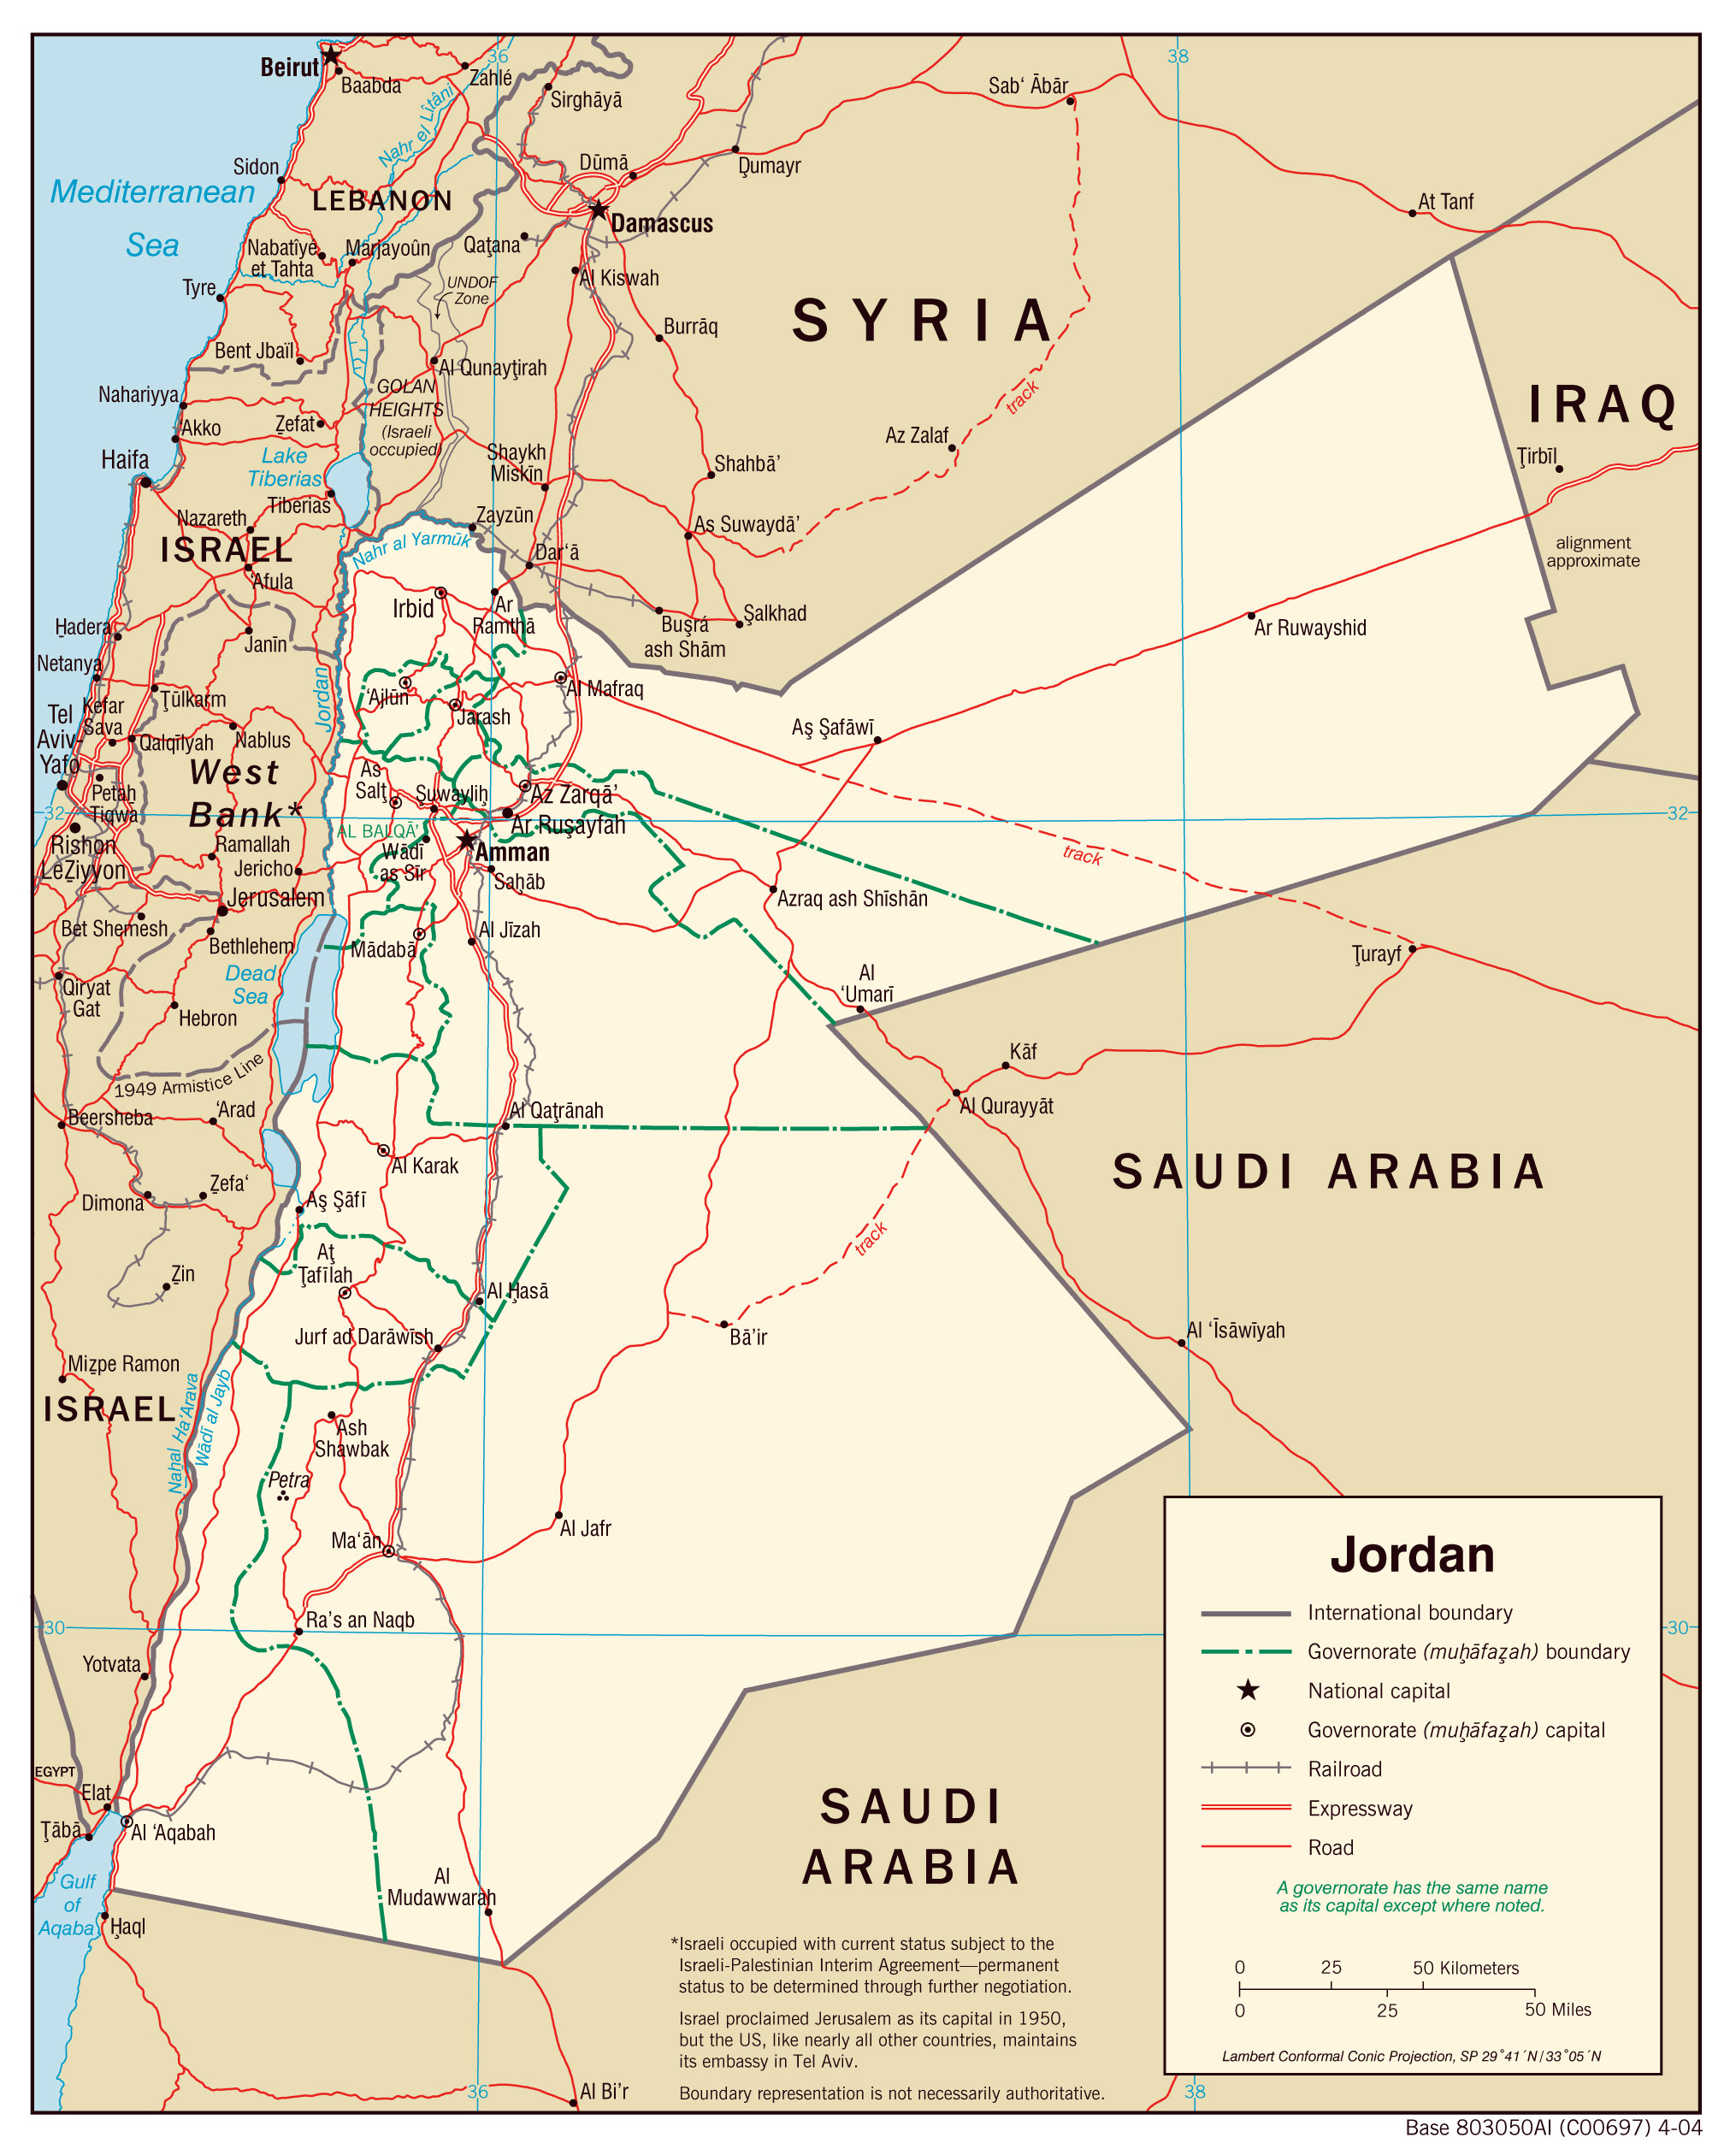 cities in jordan map